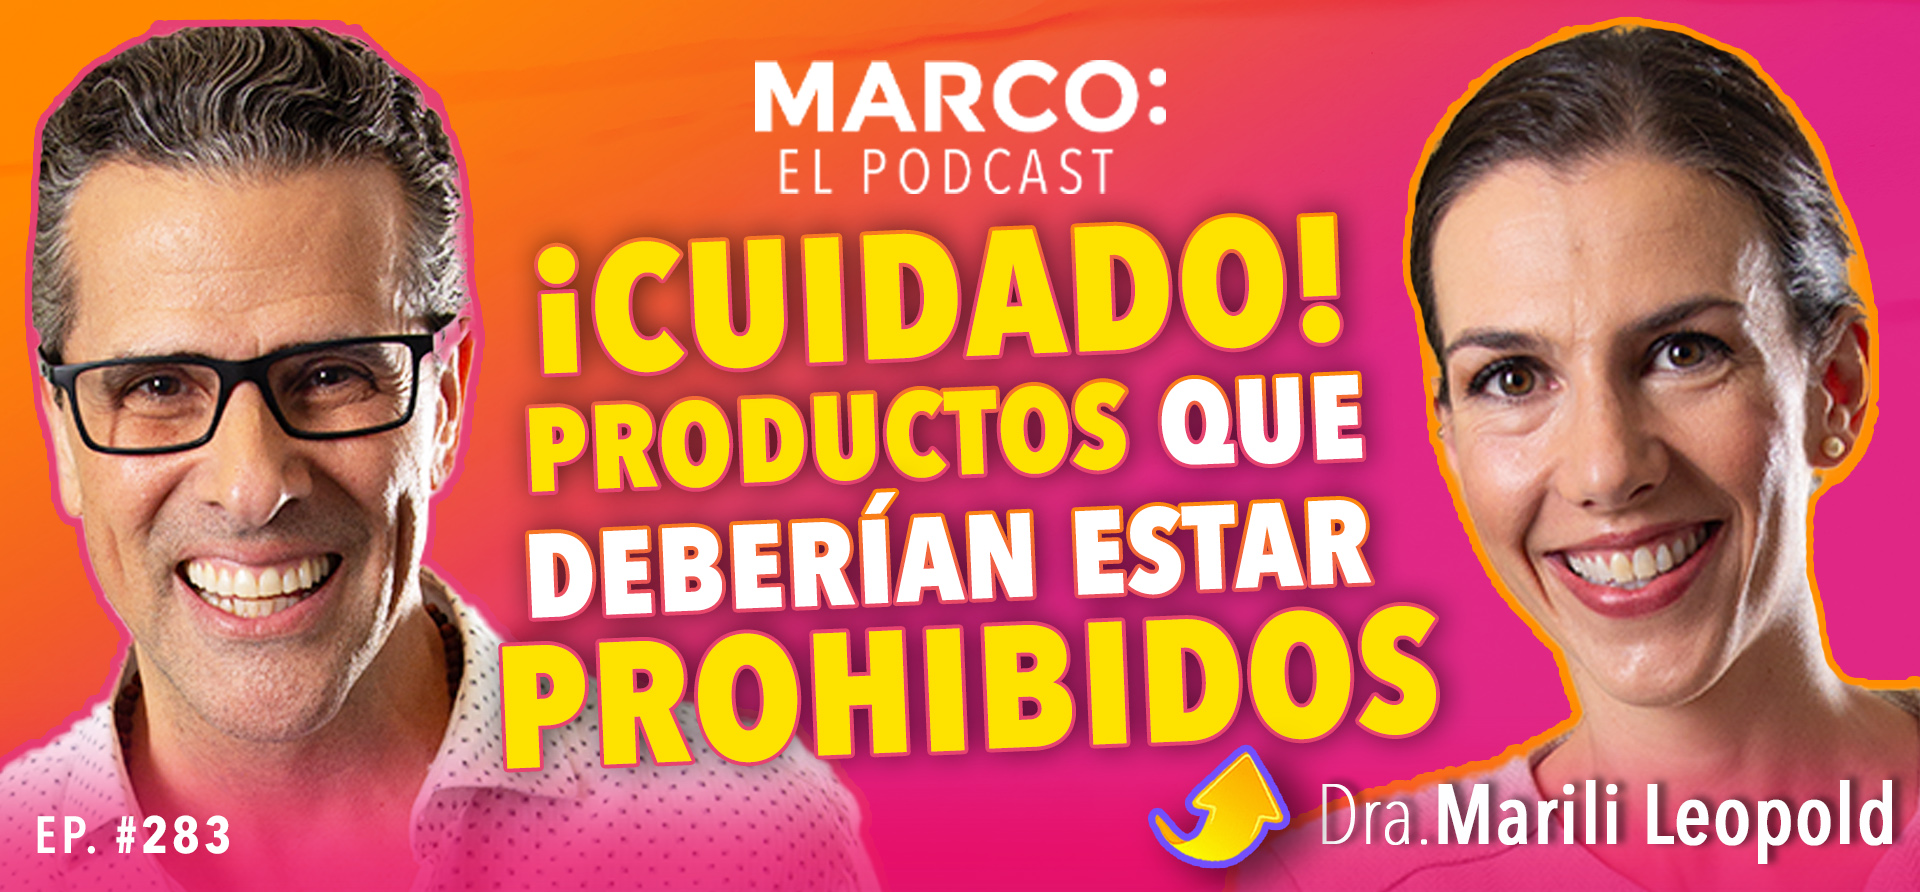 Productos que enferman Marco El Podcast